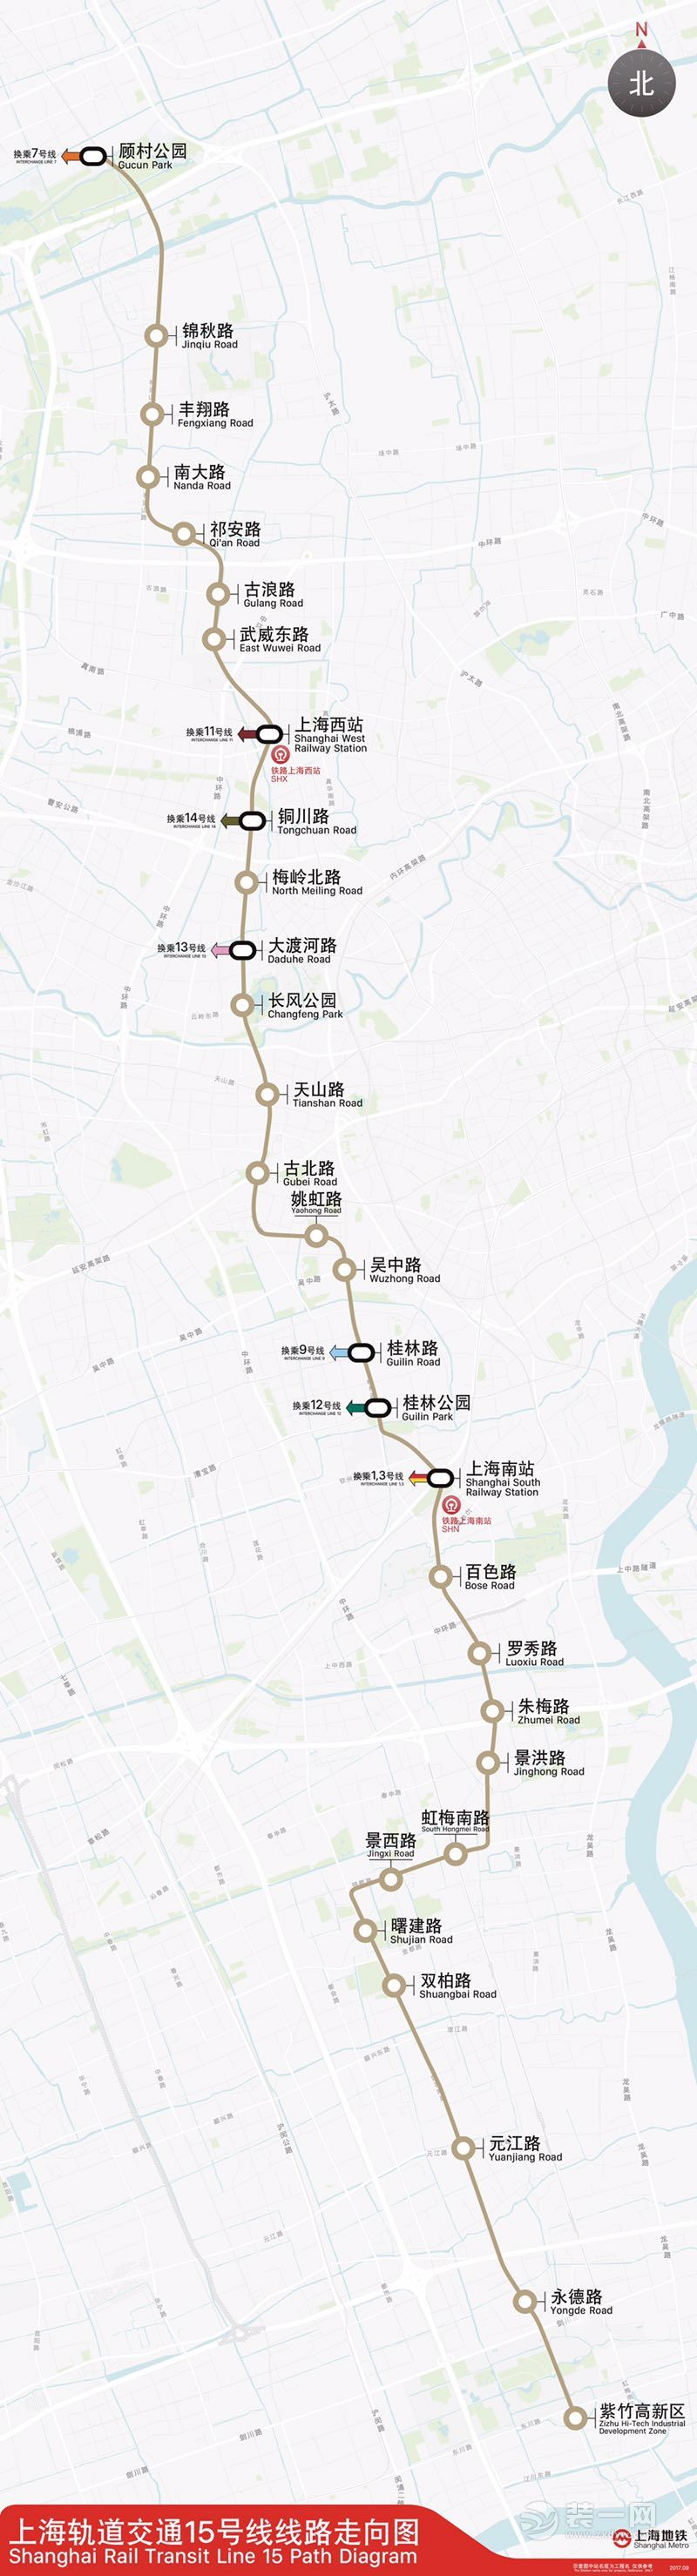 上海地铁15号线最新线路图